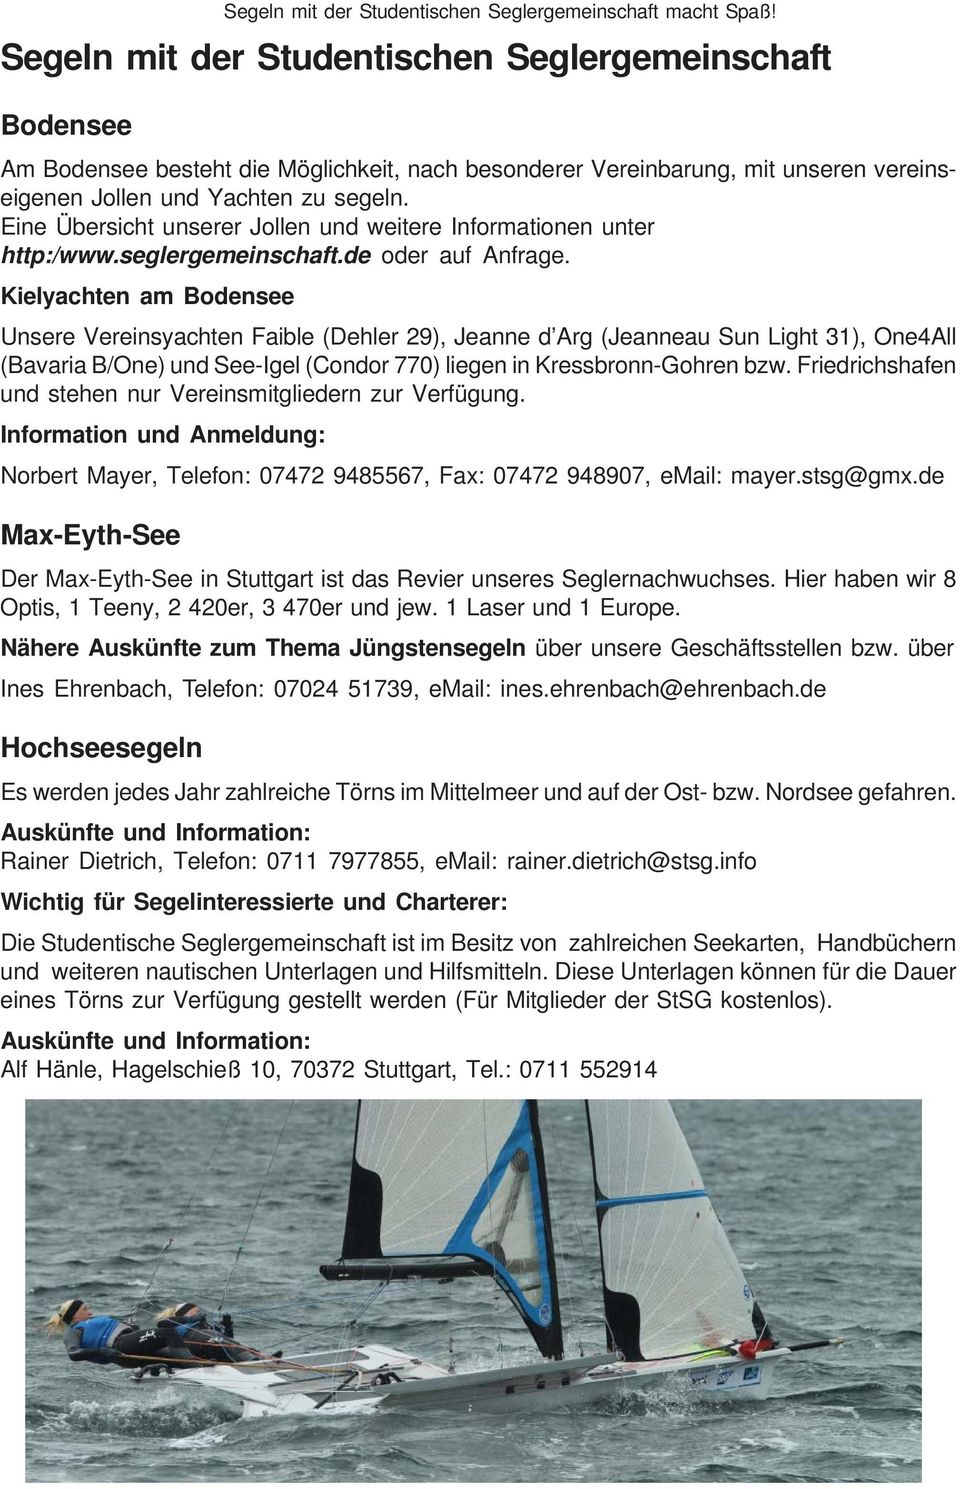 Eine Übersicht unserer Jollen und weitere Informationen unter http:/www.seglergemeinschaft.de oder auf Anfrage.